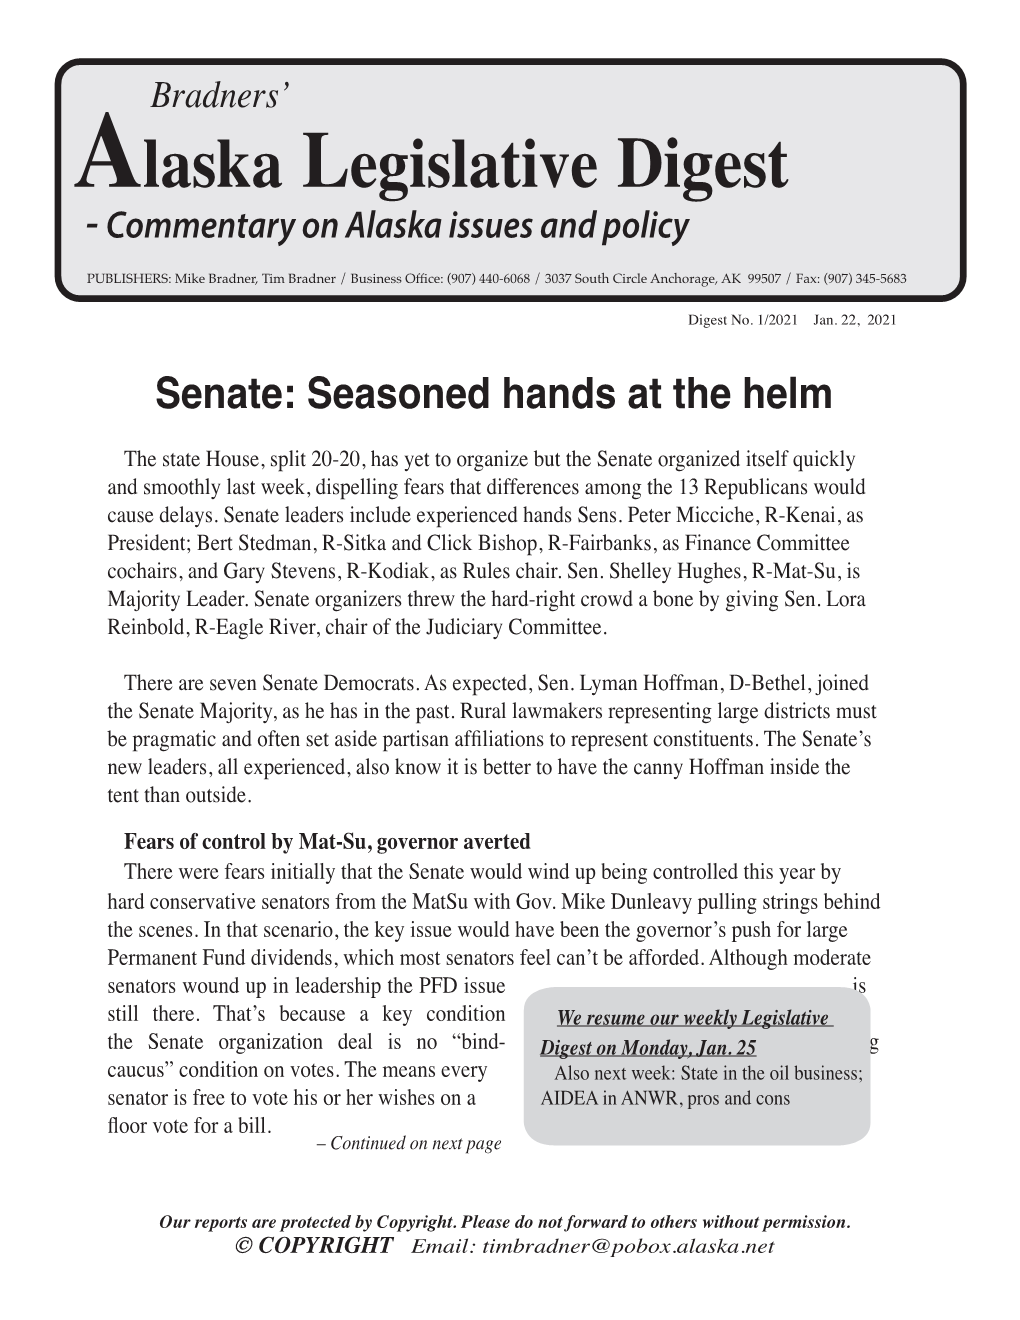 Alaska Legislative Digest No